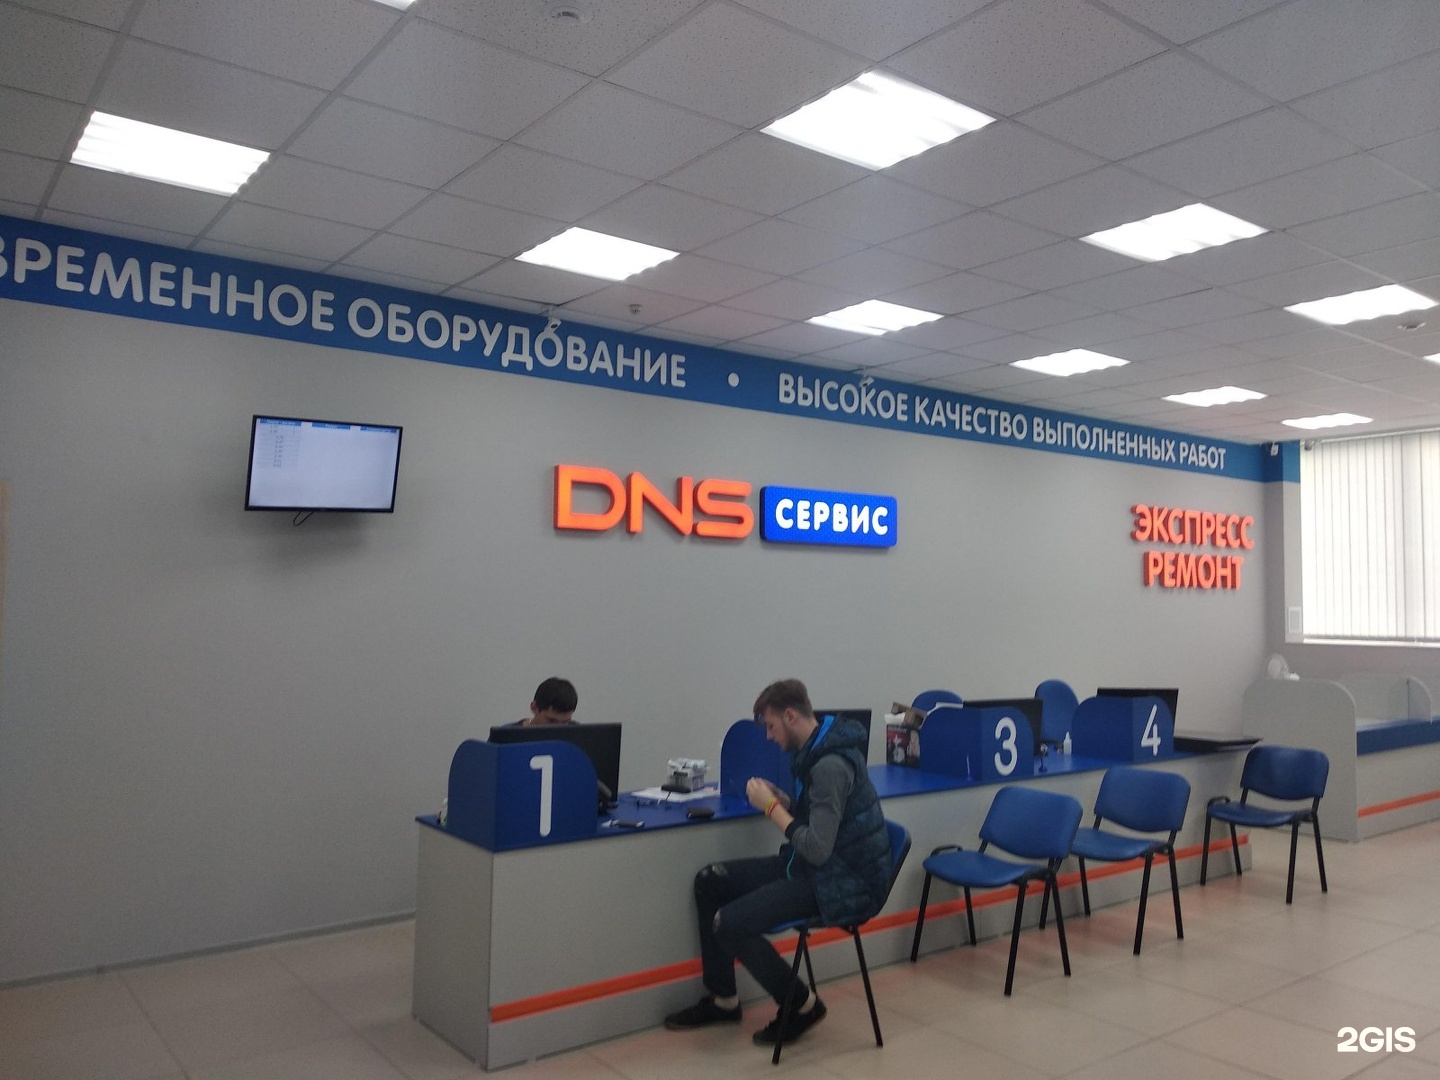 Сервисный центр ДНС ветеранов 101. DNS сервисный центр. ДНС сервис логотип. Сервисные центры Томск.